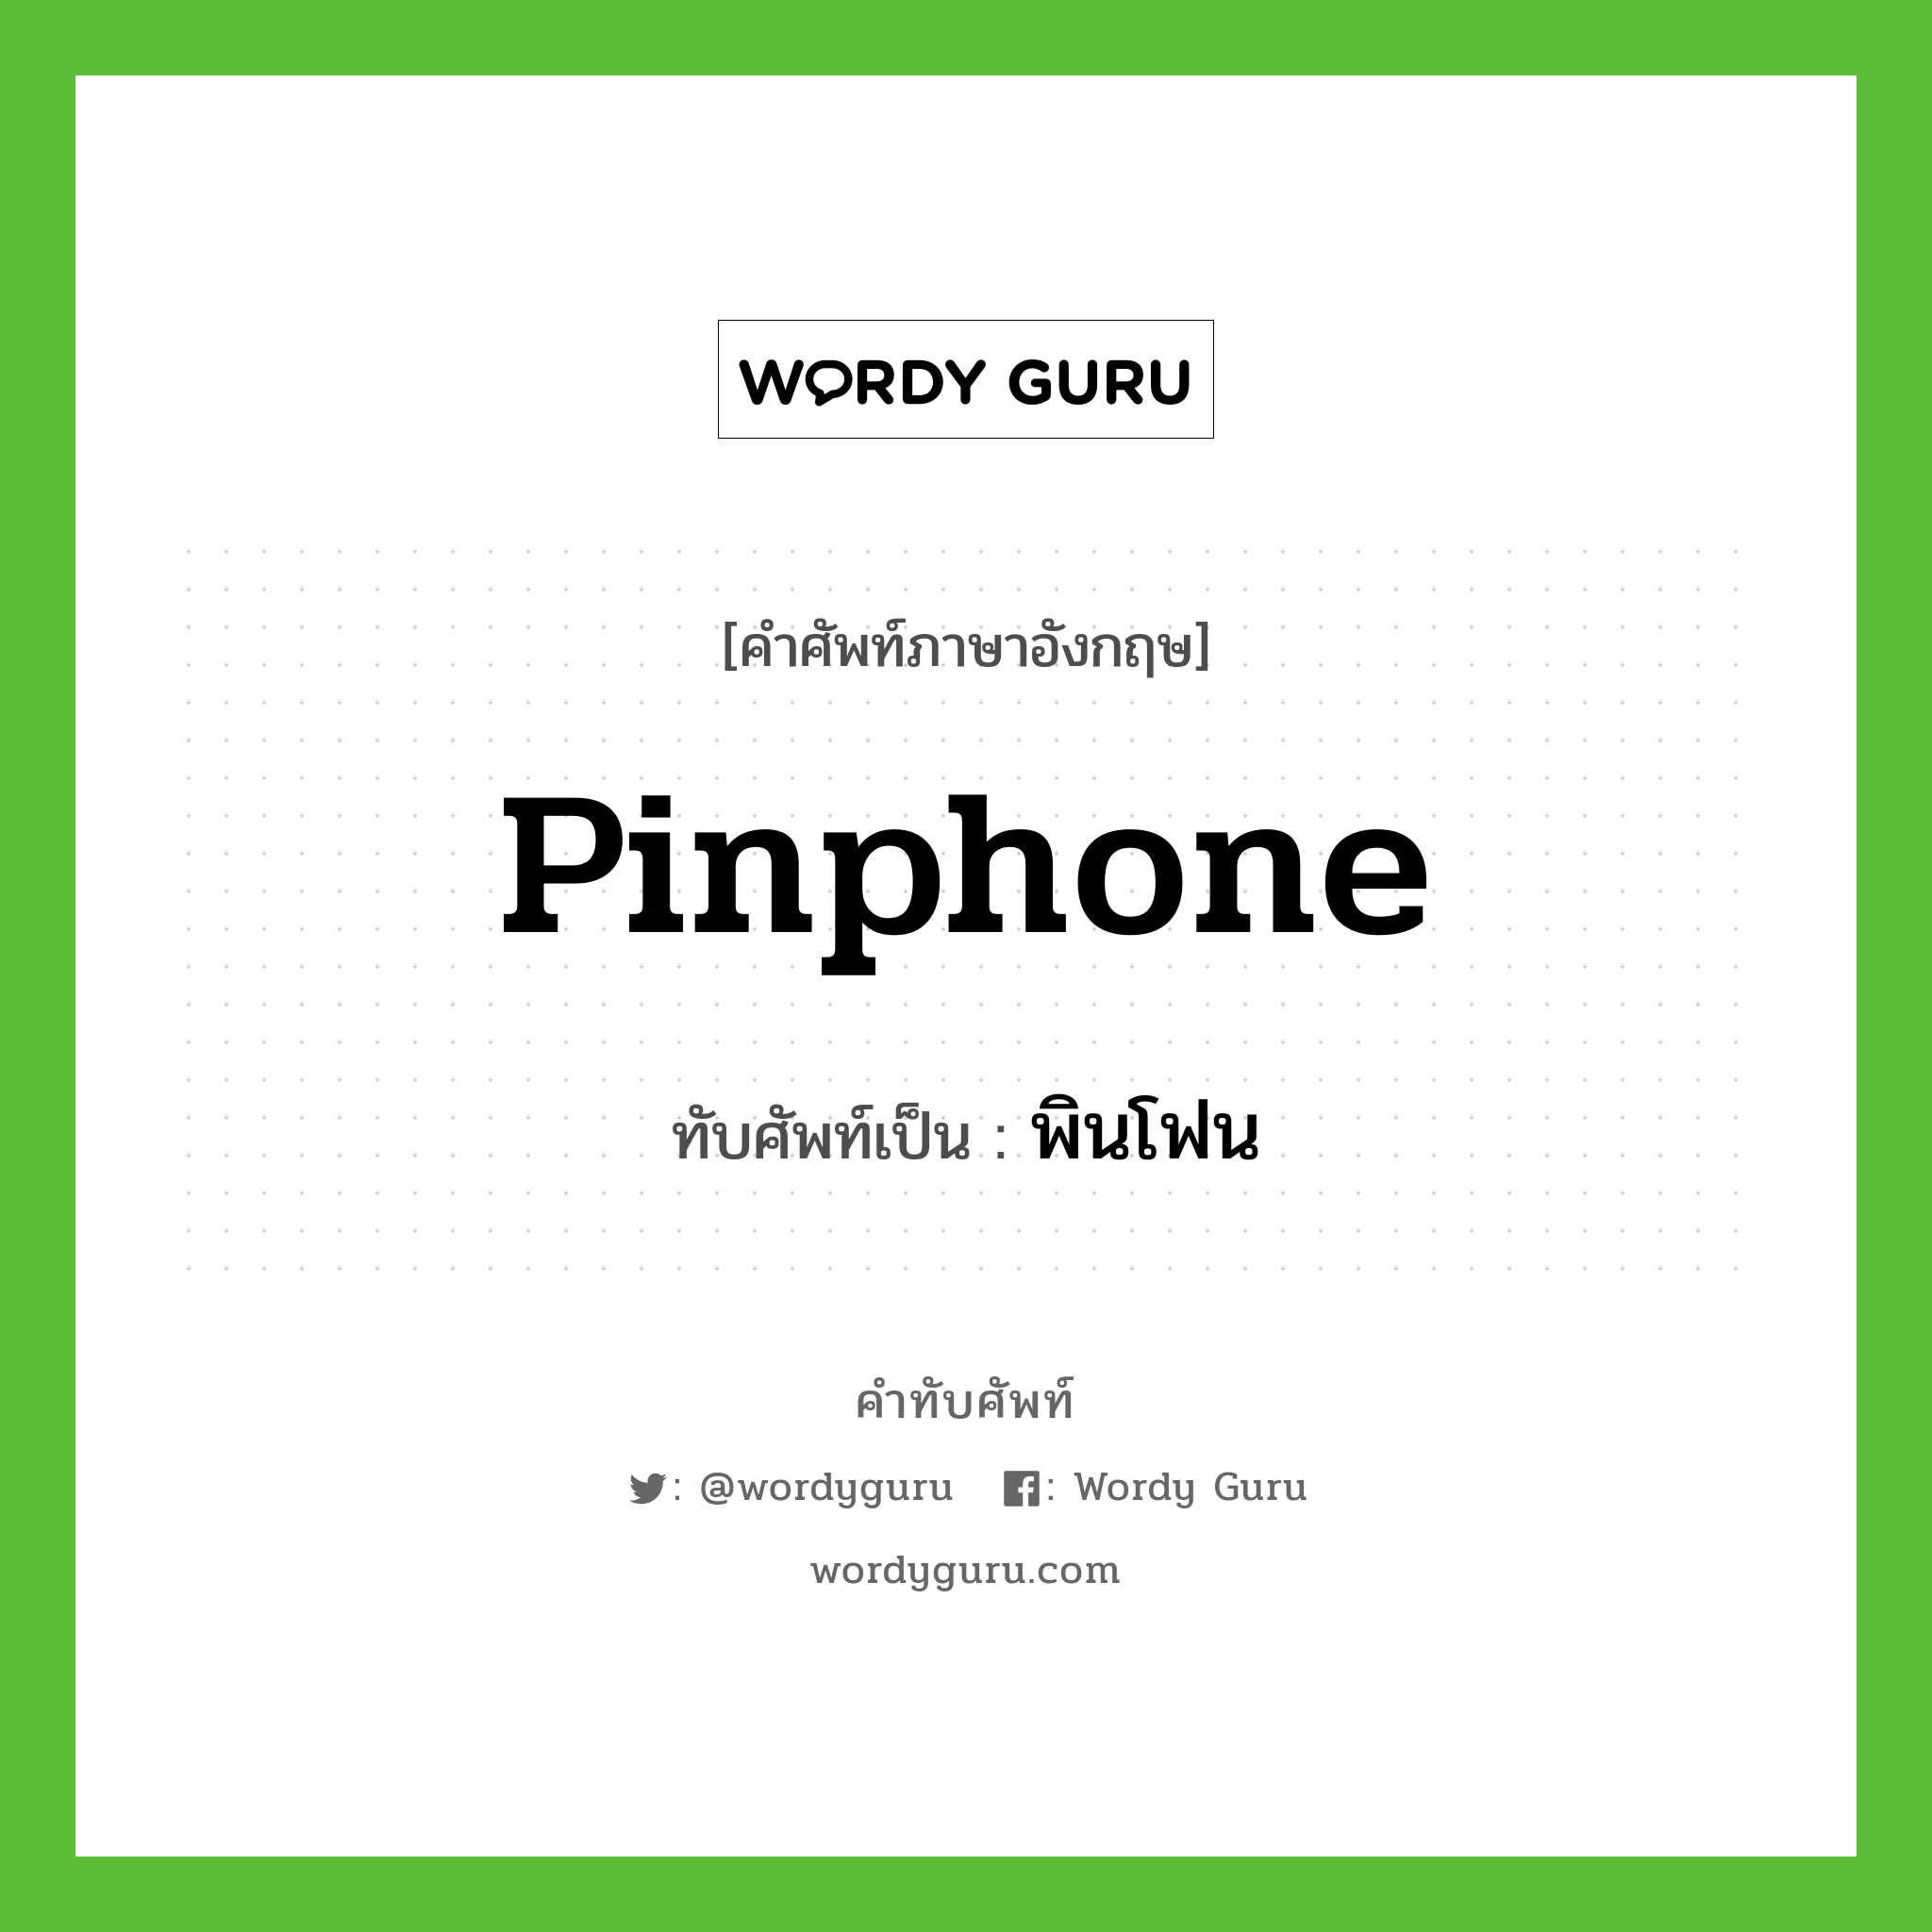 pinphone เขียนเป็นคำไทยว่าอะไร?, คำศัพท์ภาษาอังกฤษ pinphone ทับศัพท์เป็น พินโฟน